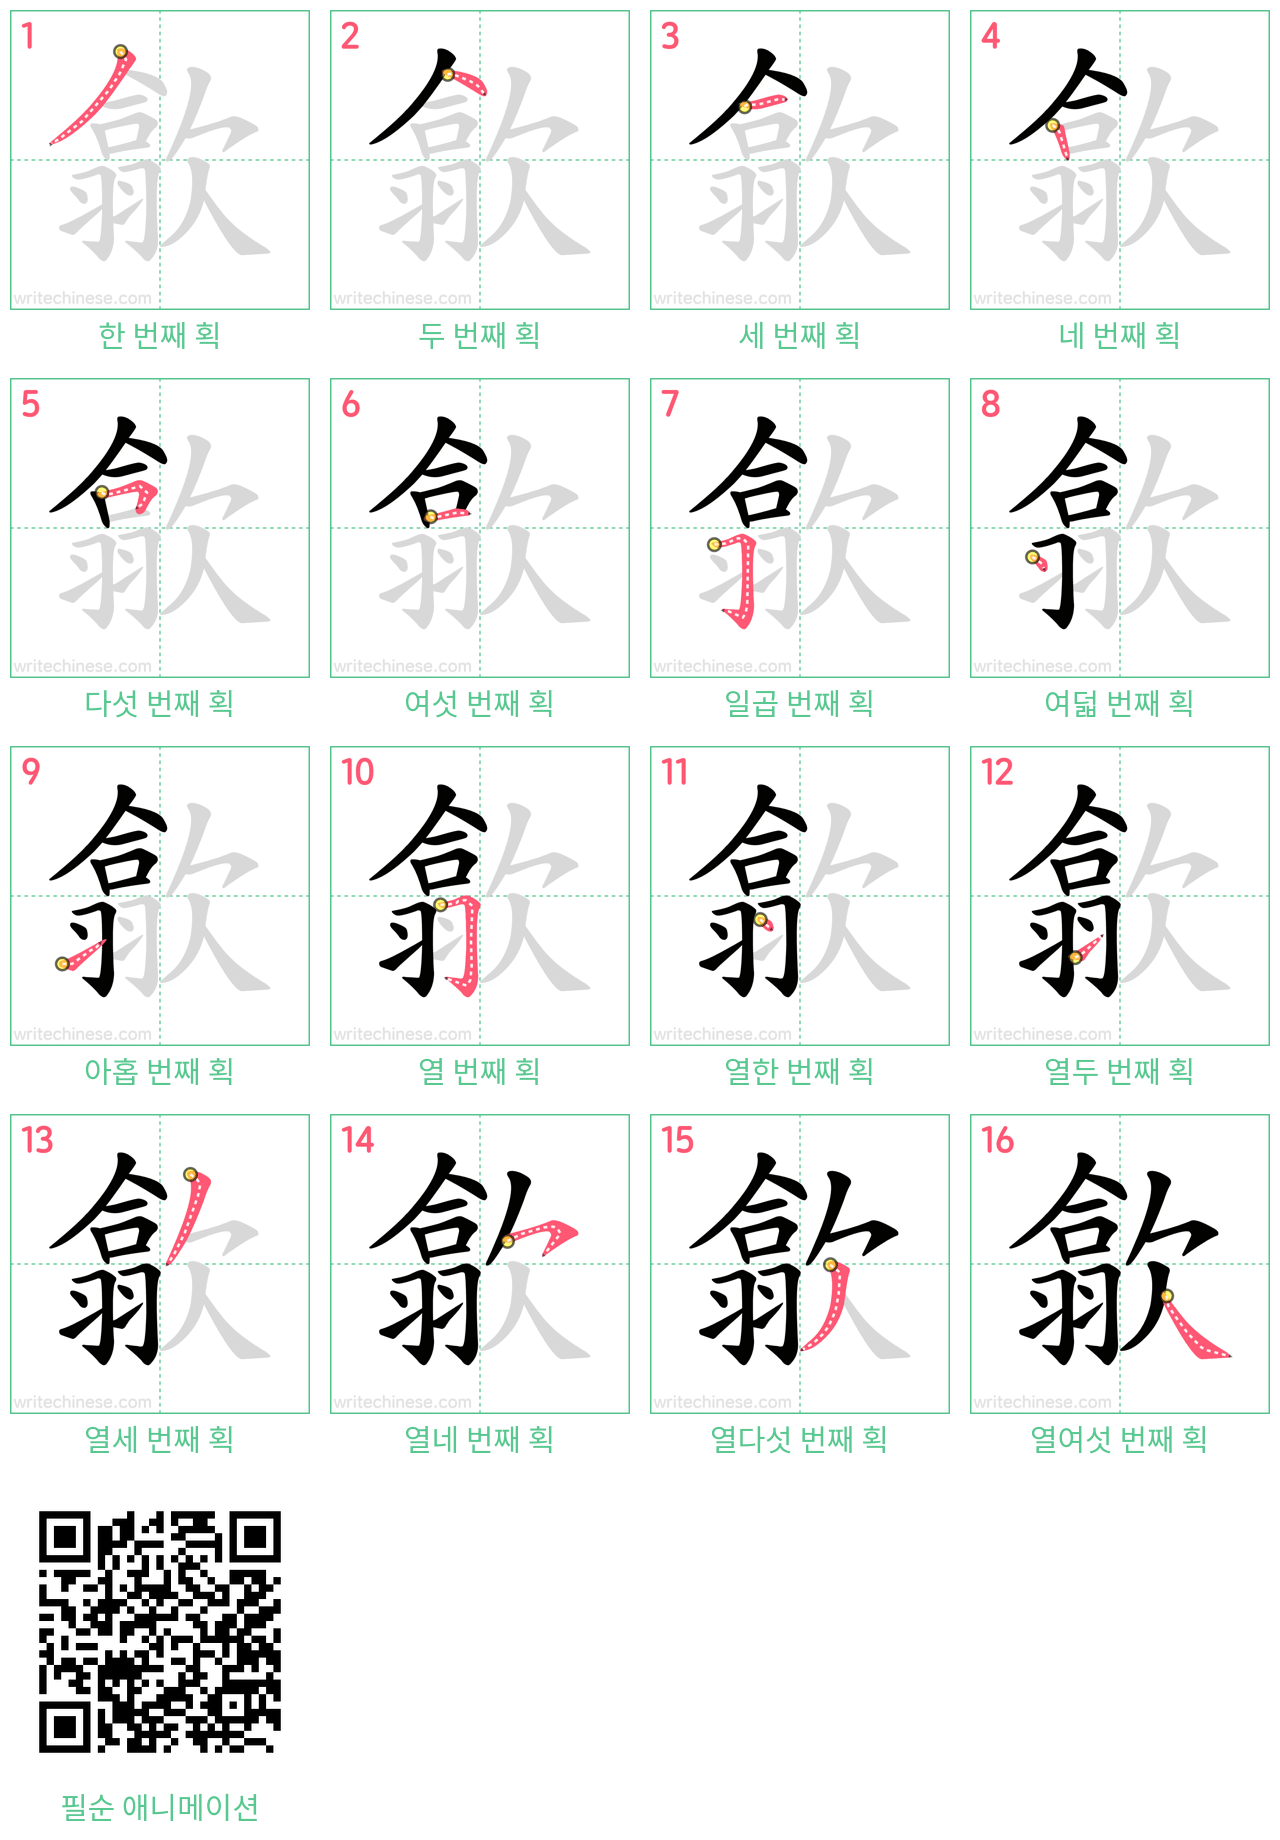 歙 step-by-step stroke order diagrams